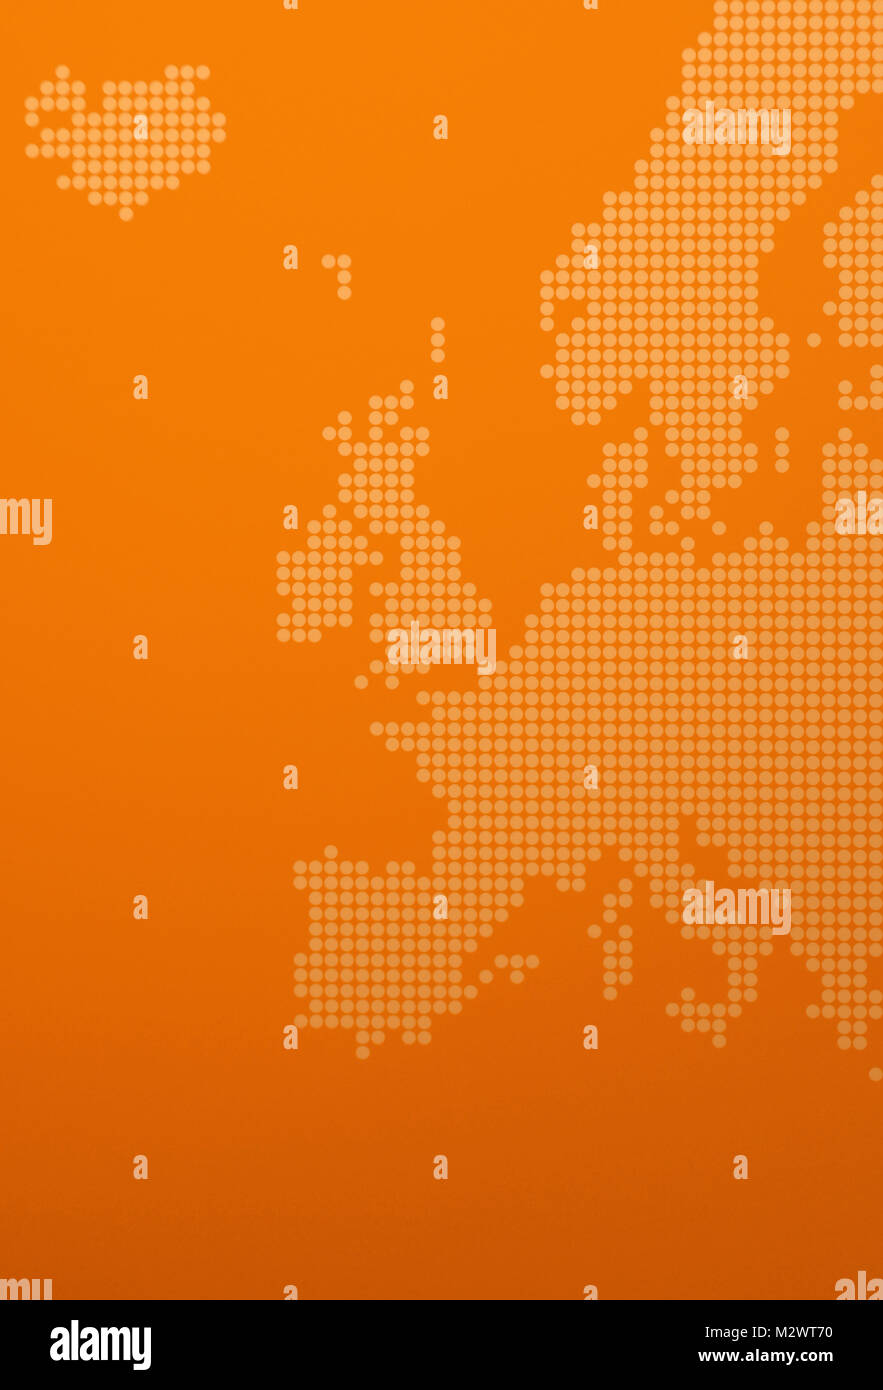 Rappresentazione grafica di Europa - stilizzazione di una mappa europea arancione Foto Stock